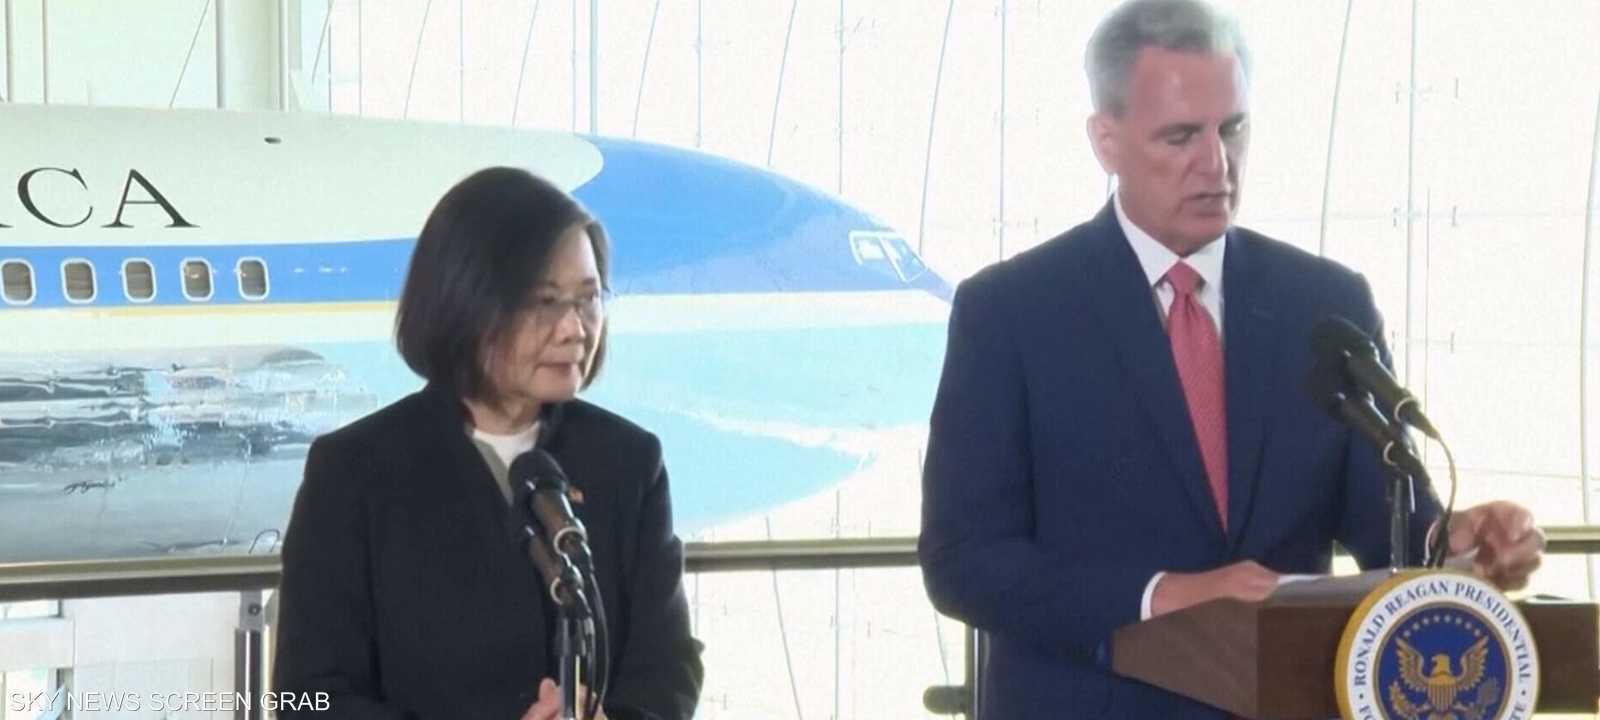 رئيسة تايوان تلتقي برئيس مجلس النواب الأميركي في كاليفورنيا